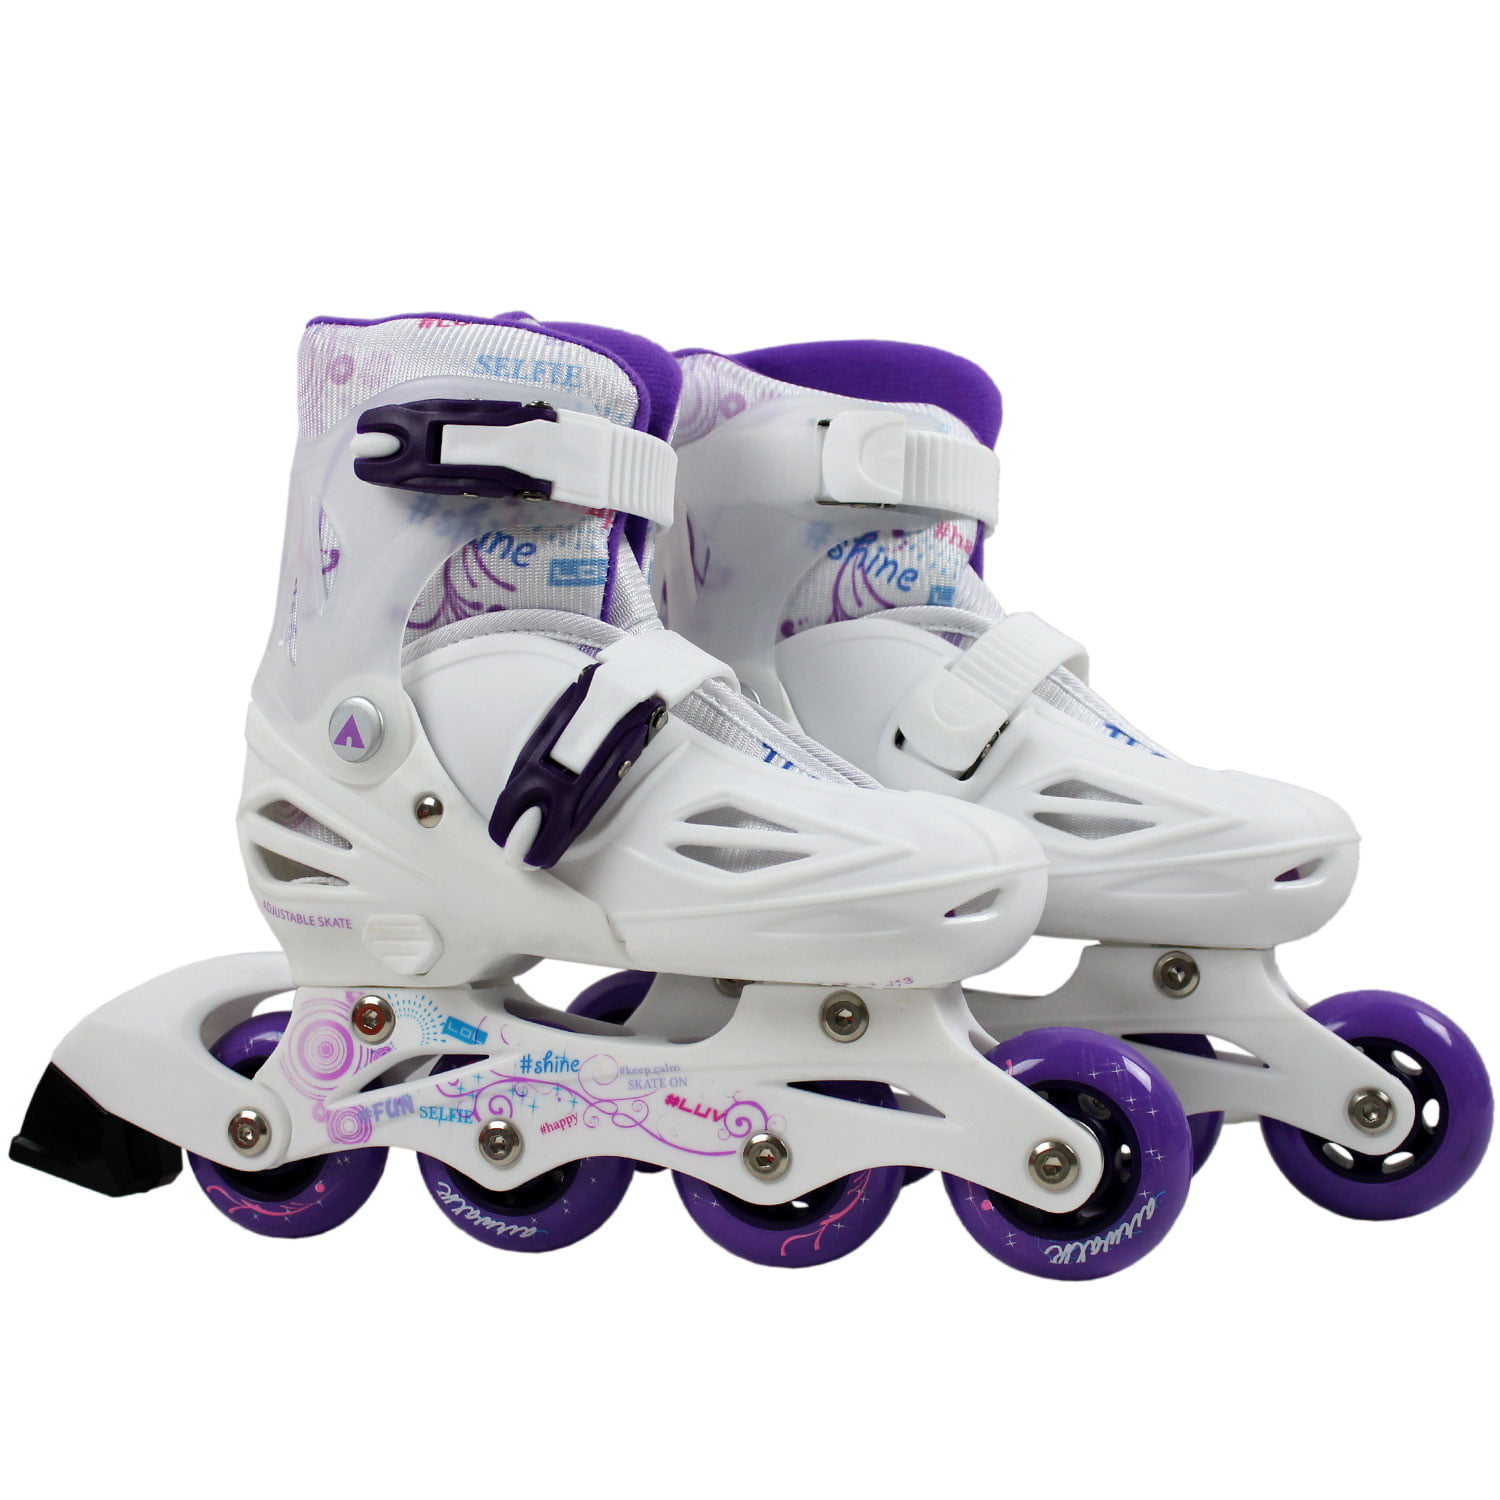 Airwalk Youth Inline Skate - Plum Purple (1-4) : Target